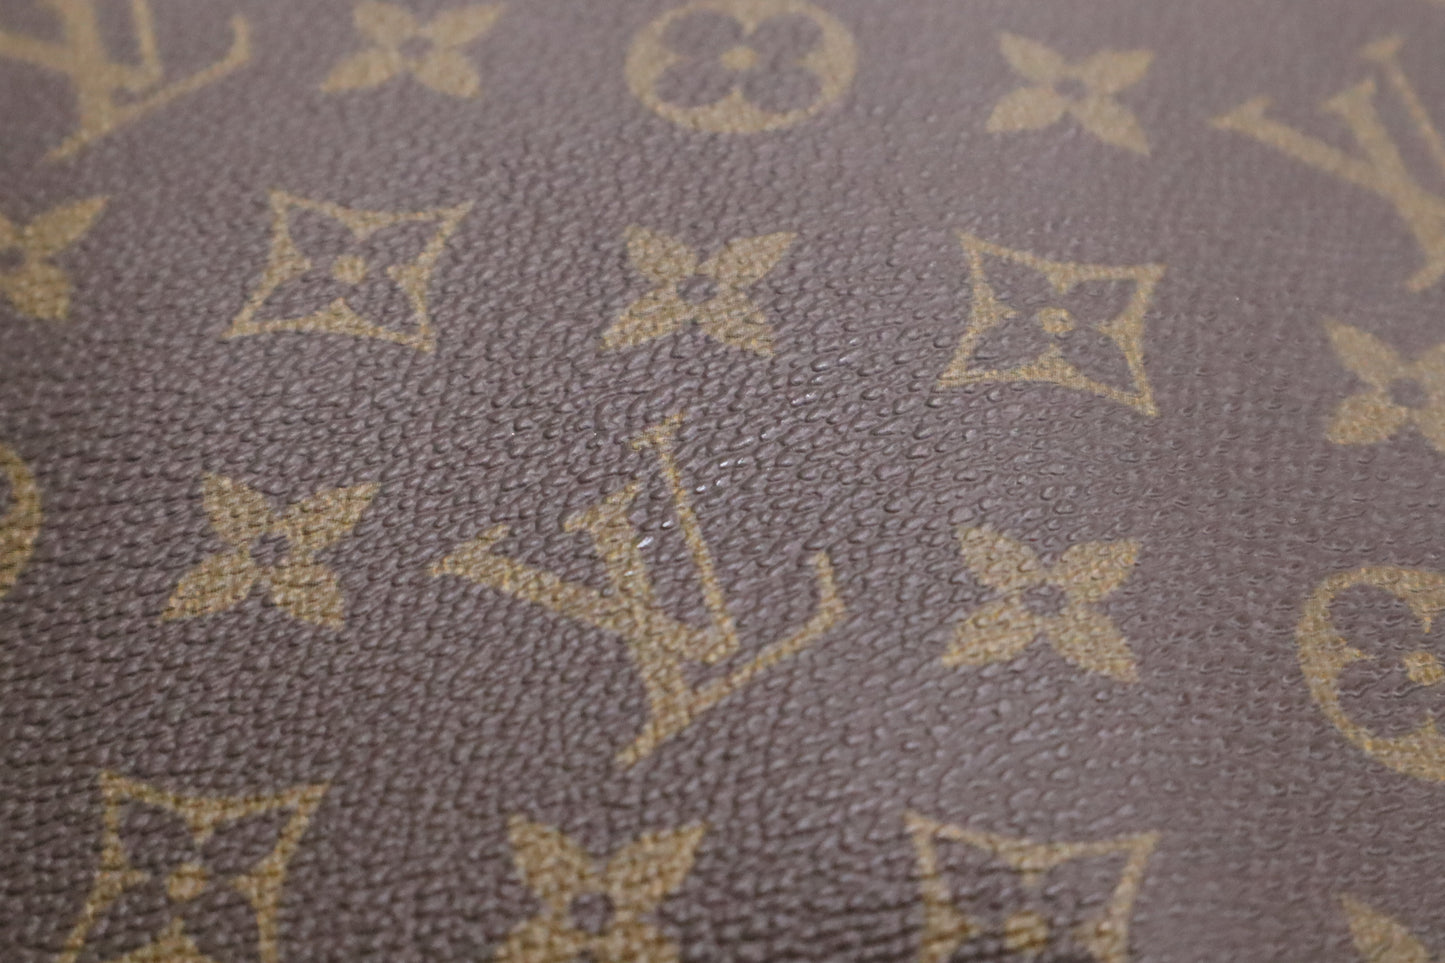 Louis Vuitton Portable Bandouliere in Monogram Canvas